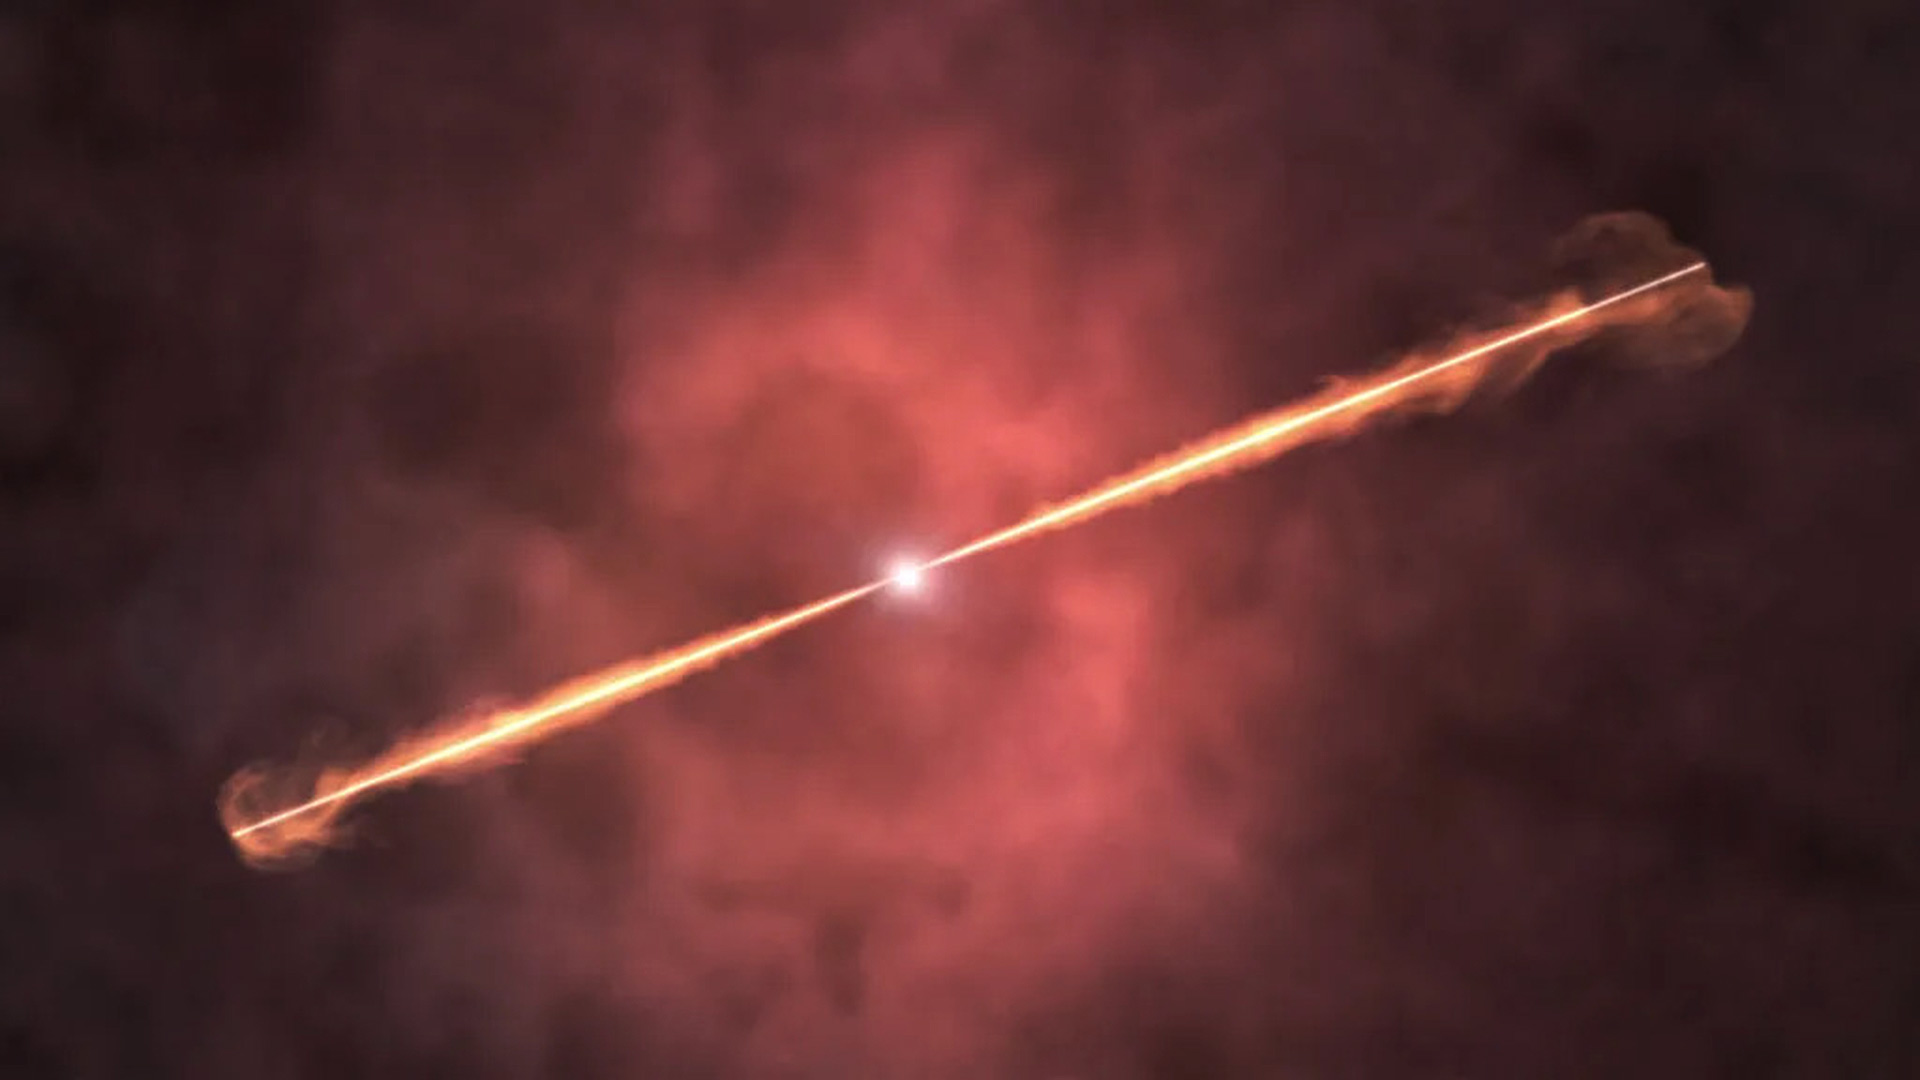 Los astrónomos creen que un GRB Largo (GRB, explosión de rayos gamma) proviene de una estrella masiva que gira rápidamente cuando su núcleo se queda sin combustible y colapsa, formando un agujero negro en el centro de la estrella. En el concepto de este artista, dos chorros emergen de una estrella moribunda e interactúan con el gas y el polvo alrededor.